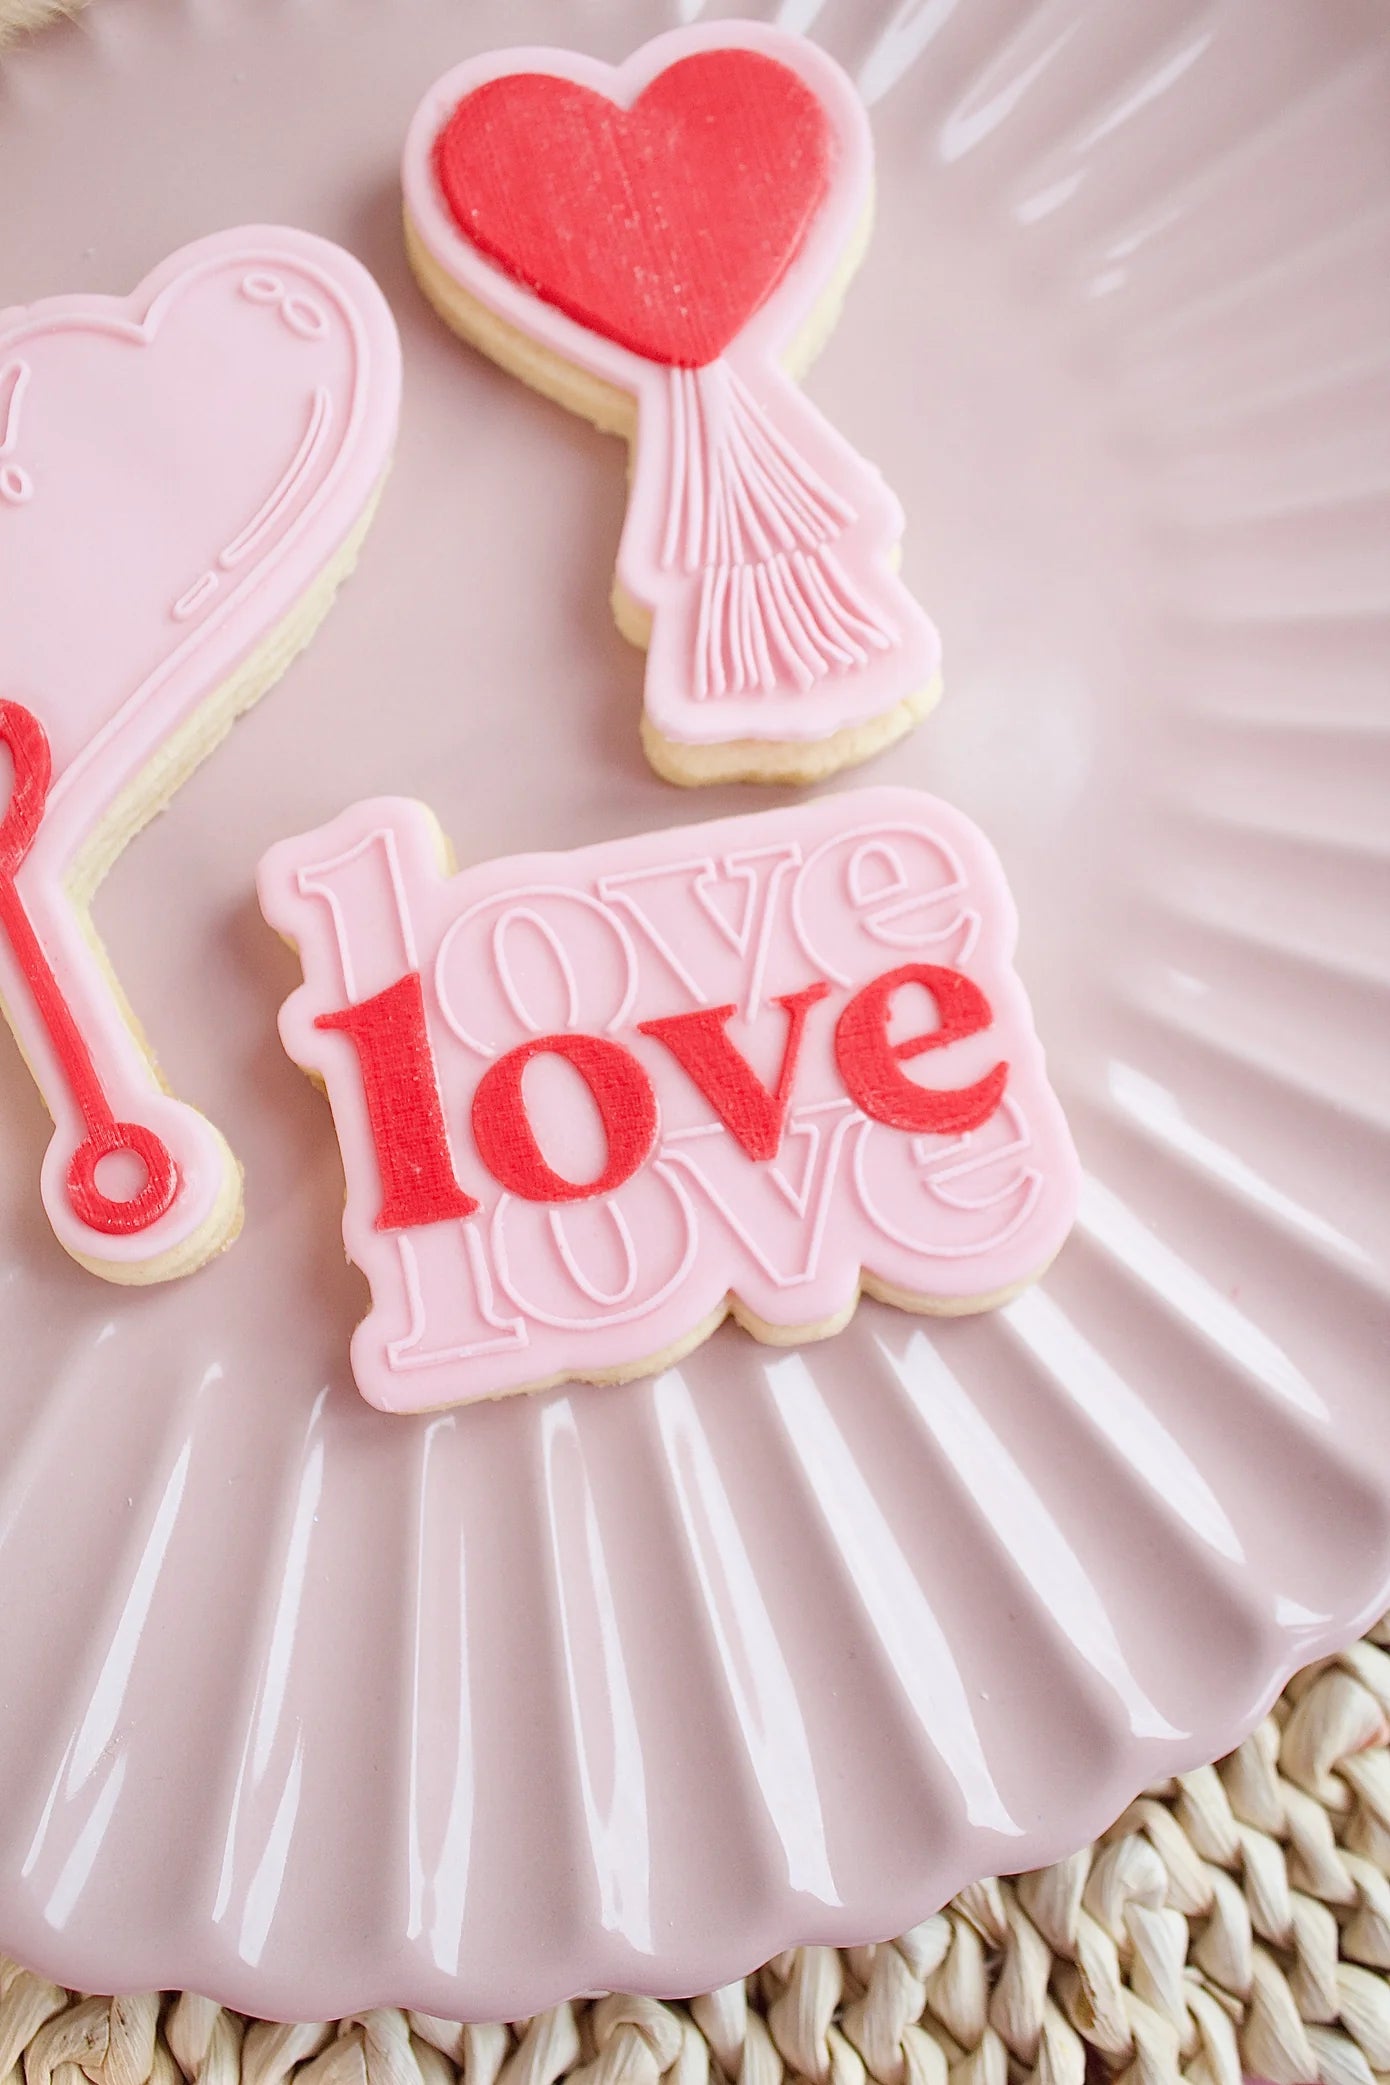 LOVE LOVE LOVE + Cookie Cutter